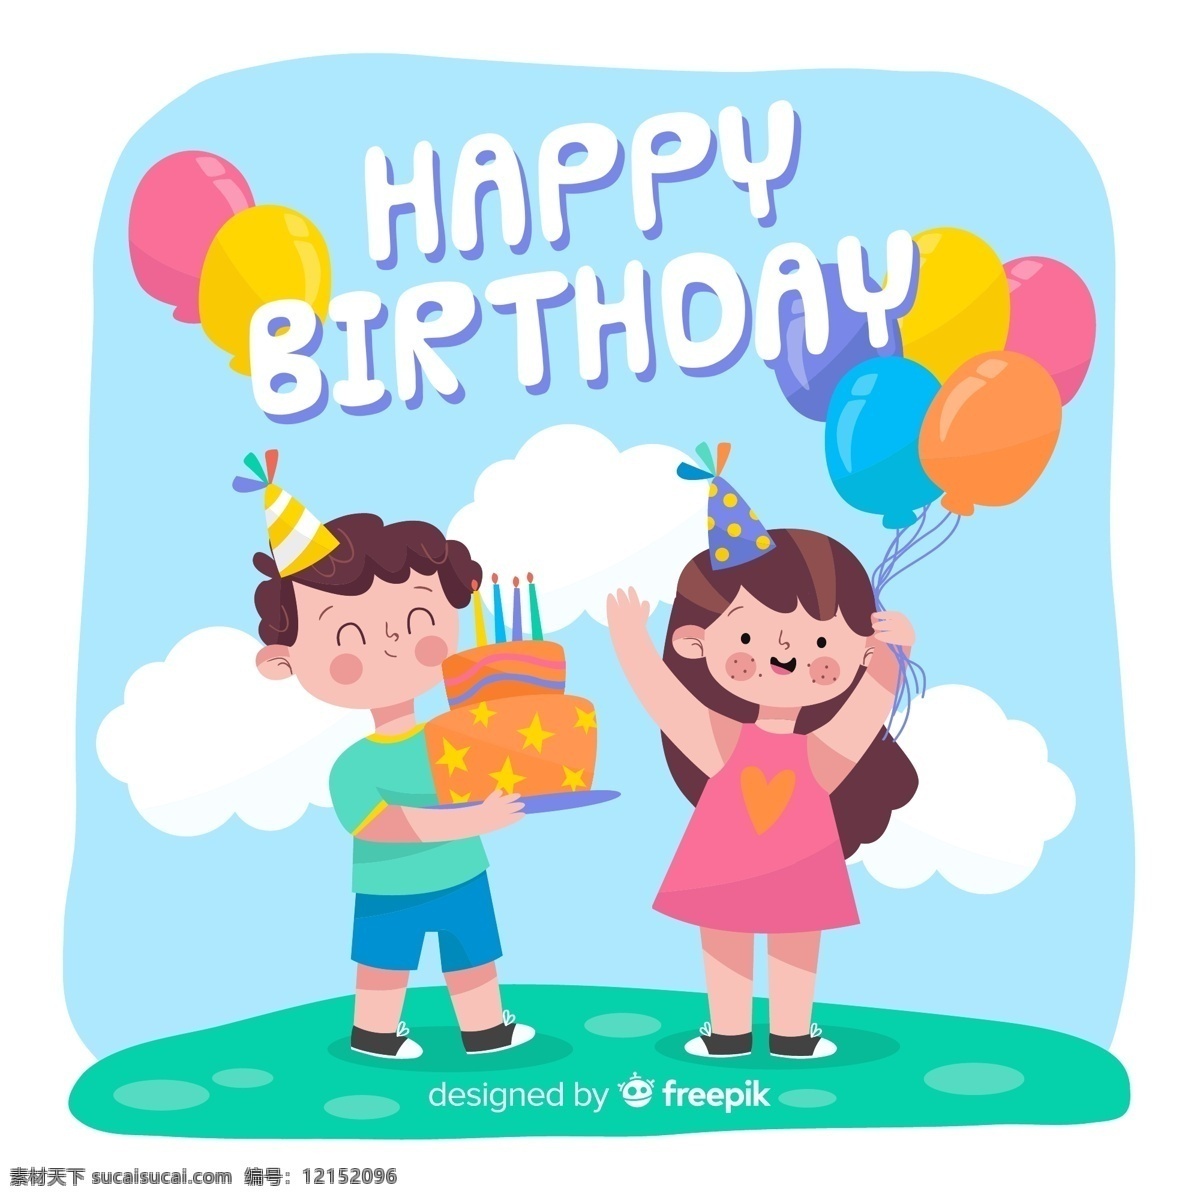 创意过生日 的男孩女孩 happy birthday 创意 生日 男孩 女孩 气球 云朵 生日蛋糕 生日快乐 矢量图 ai格式 人物